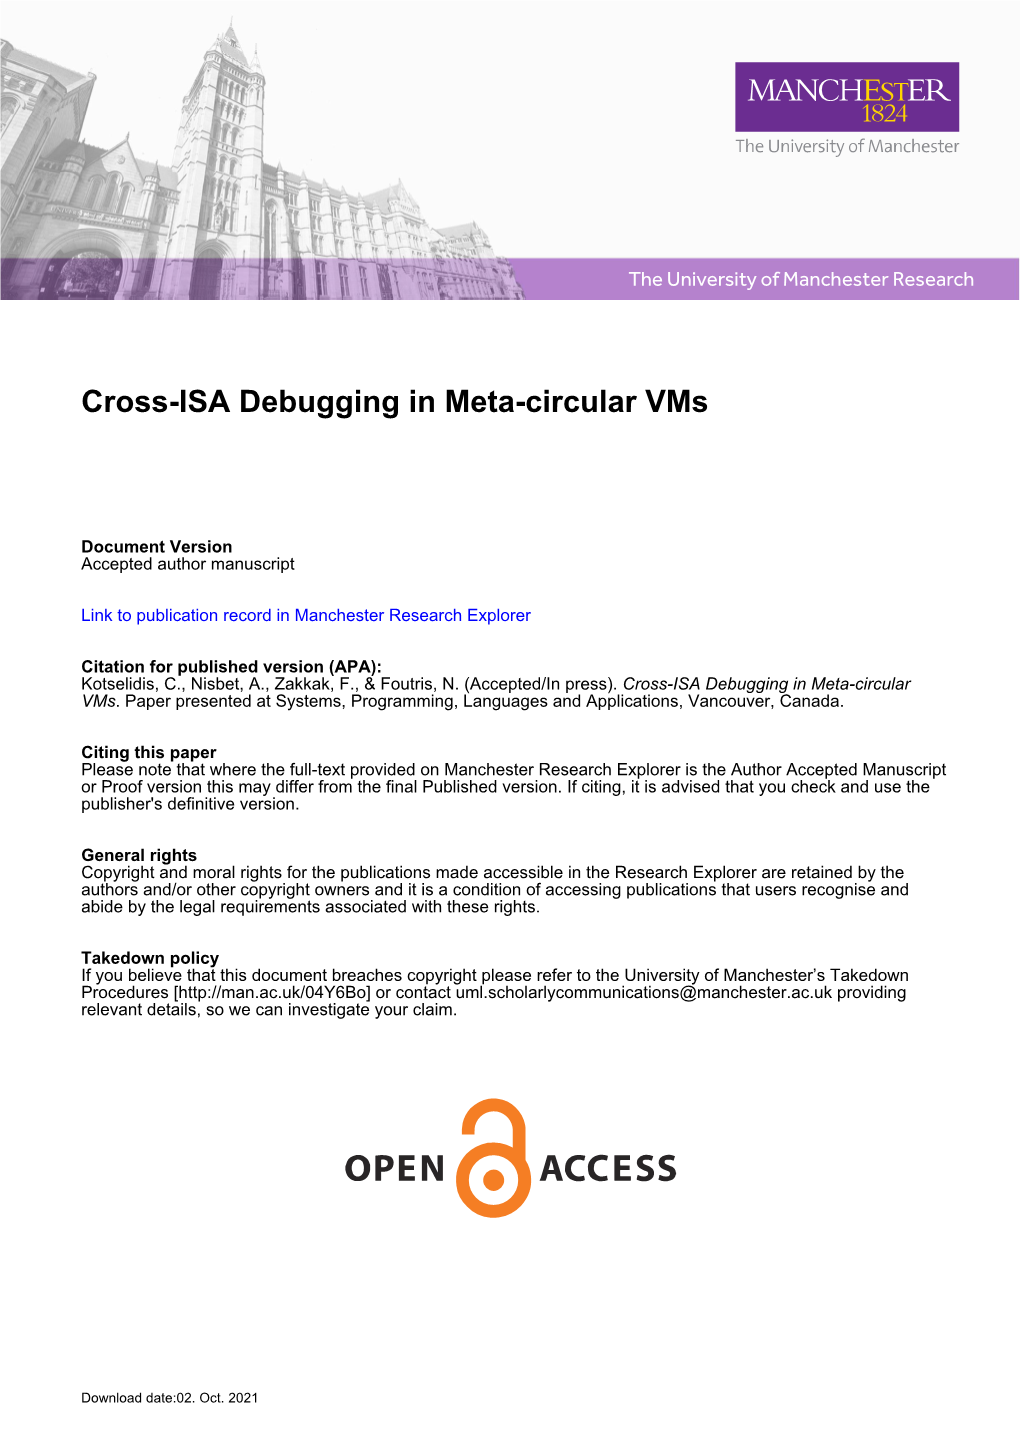 Cross-ISA Debugging in Meta-Circular Vms